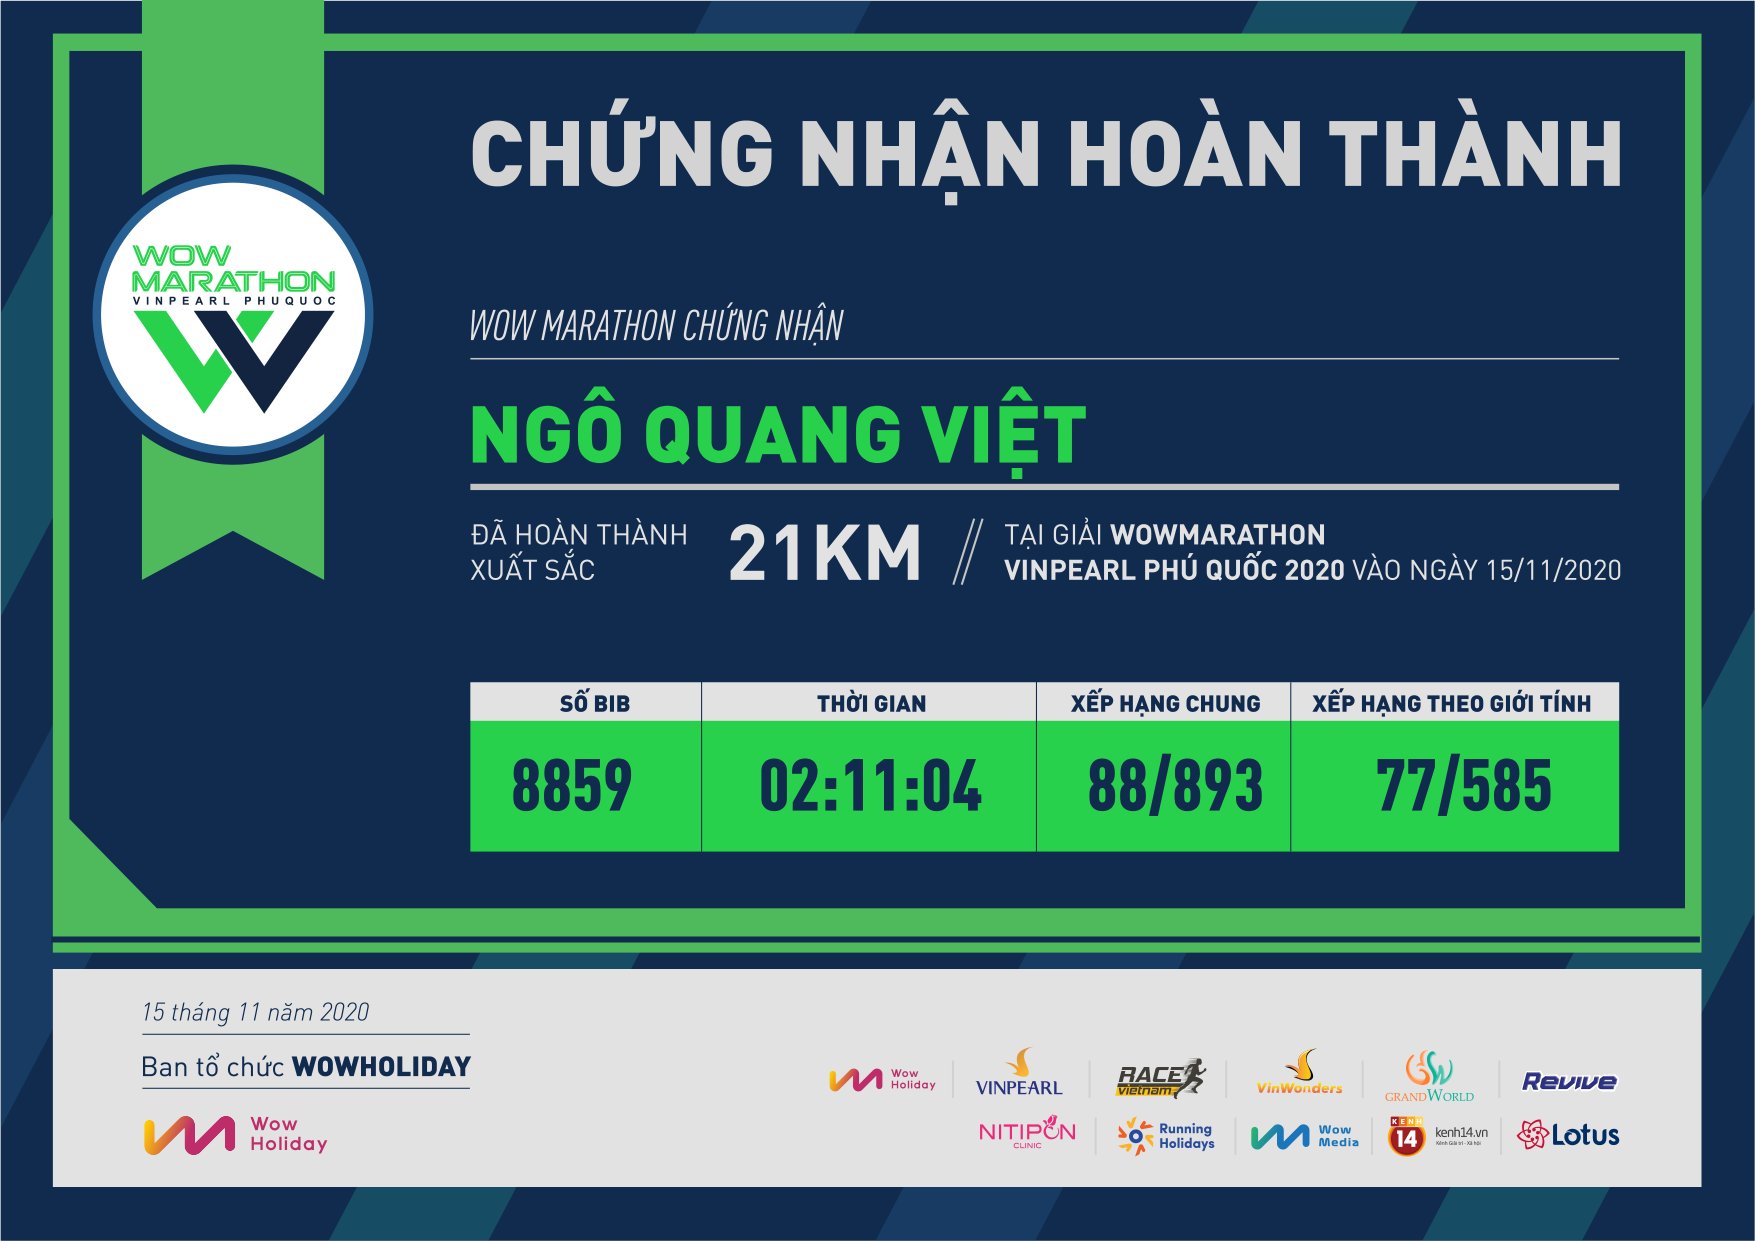 8859 - Ngô Quang Việt